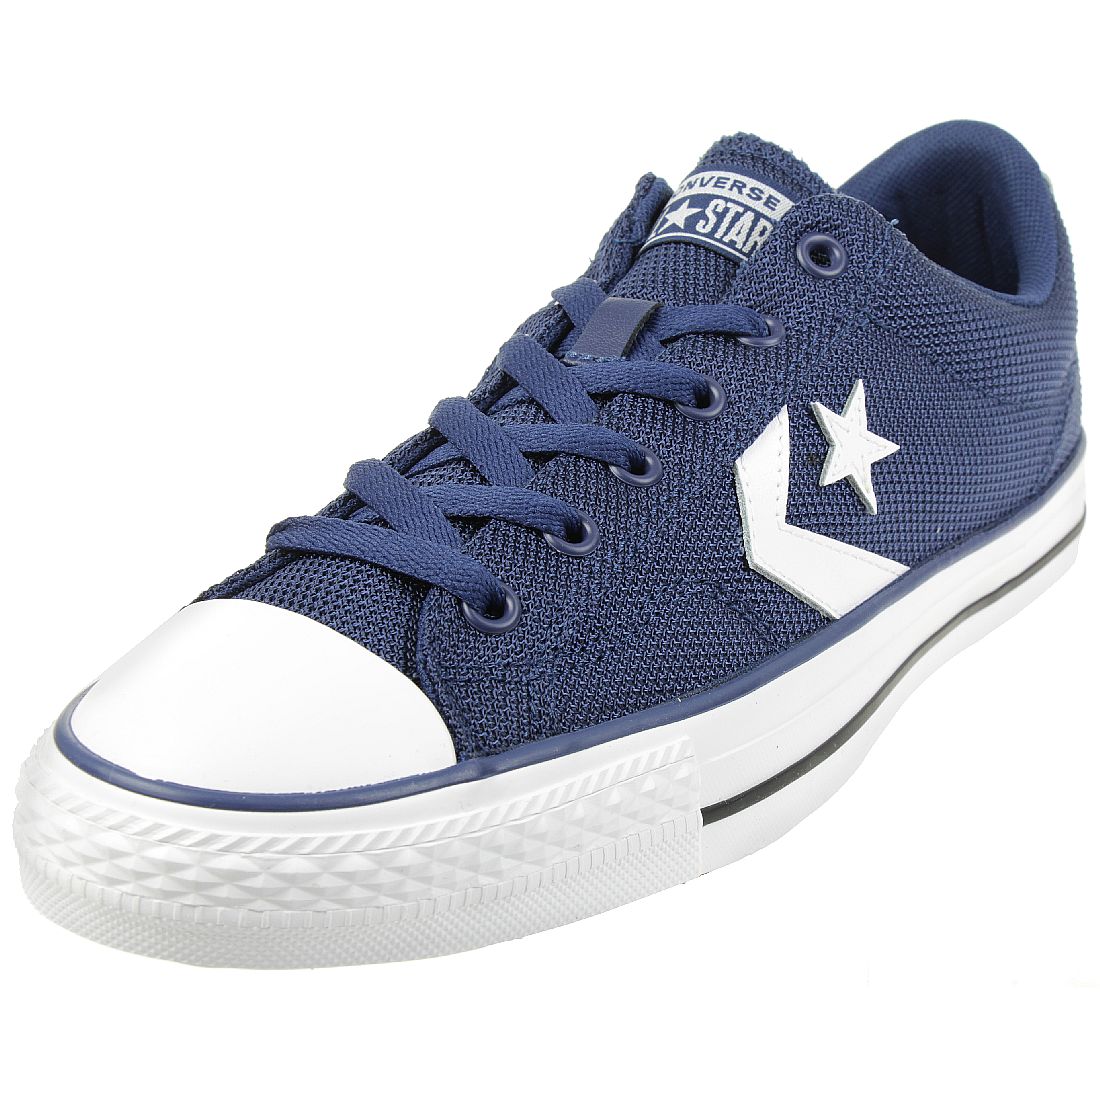 Converse STAR PLAYER OX Schuhe Sneaker 160582C blau 37 EU